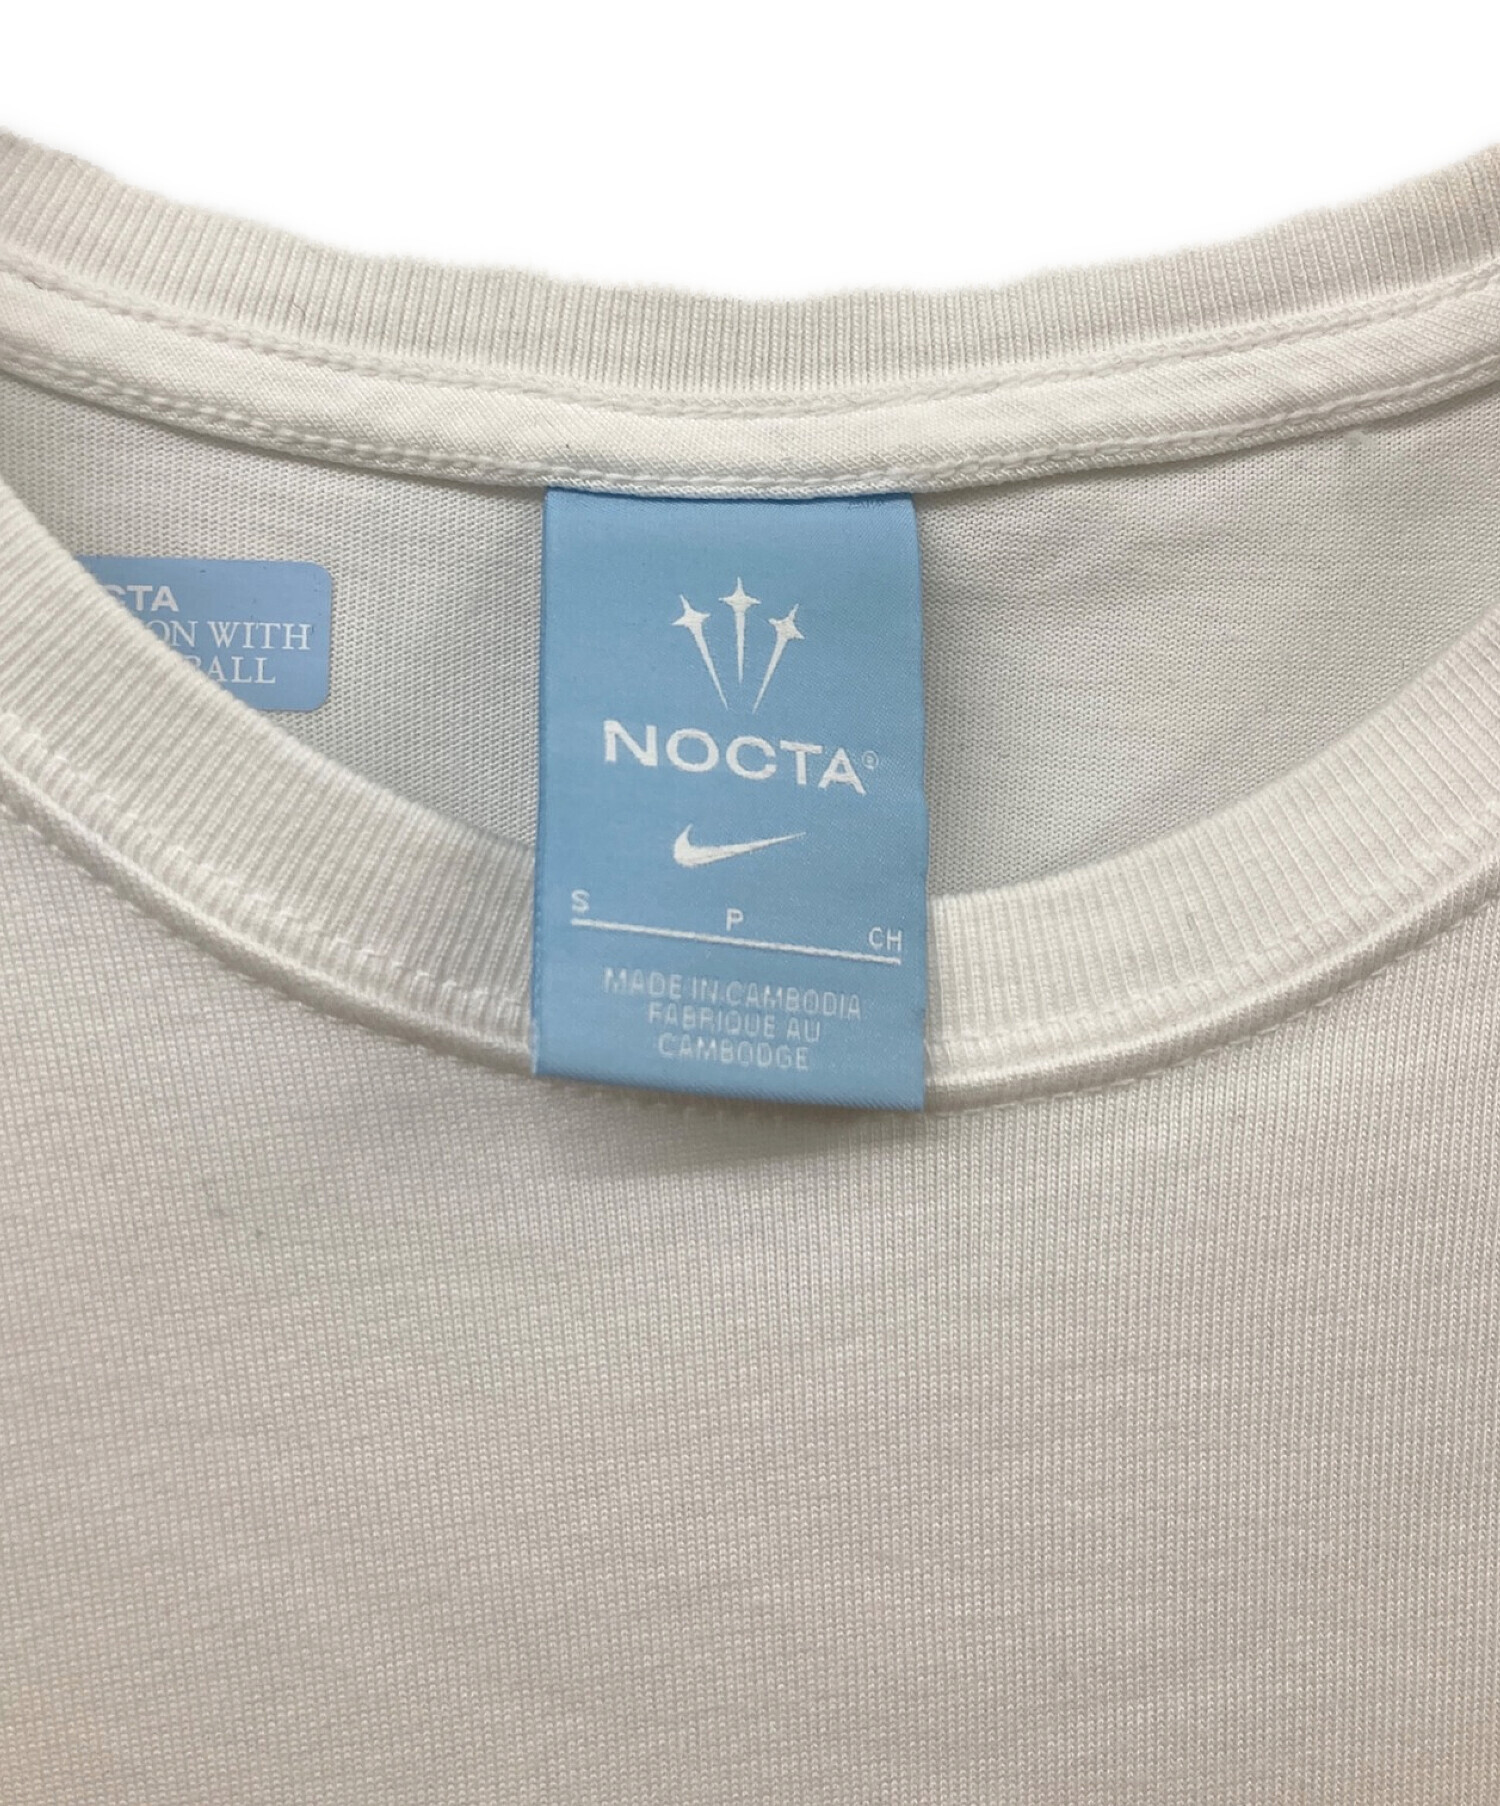 NIKE NOCTA Tシャツ ホワイト Lサイズ 新品